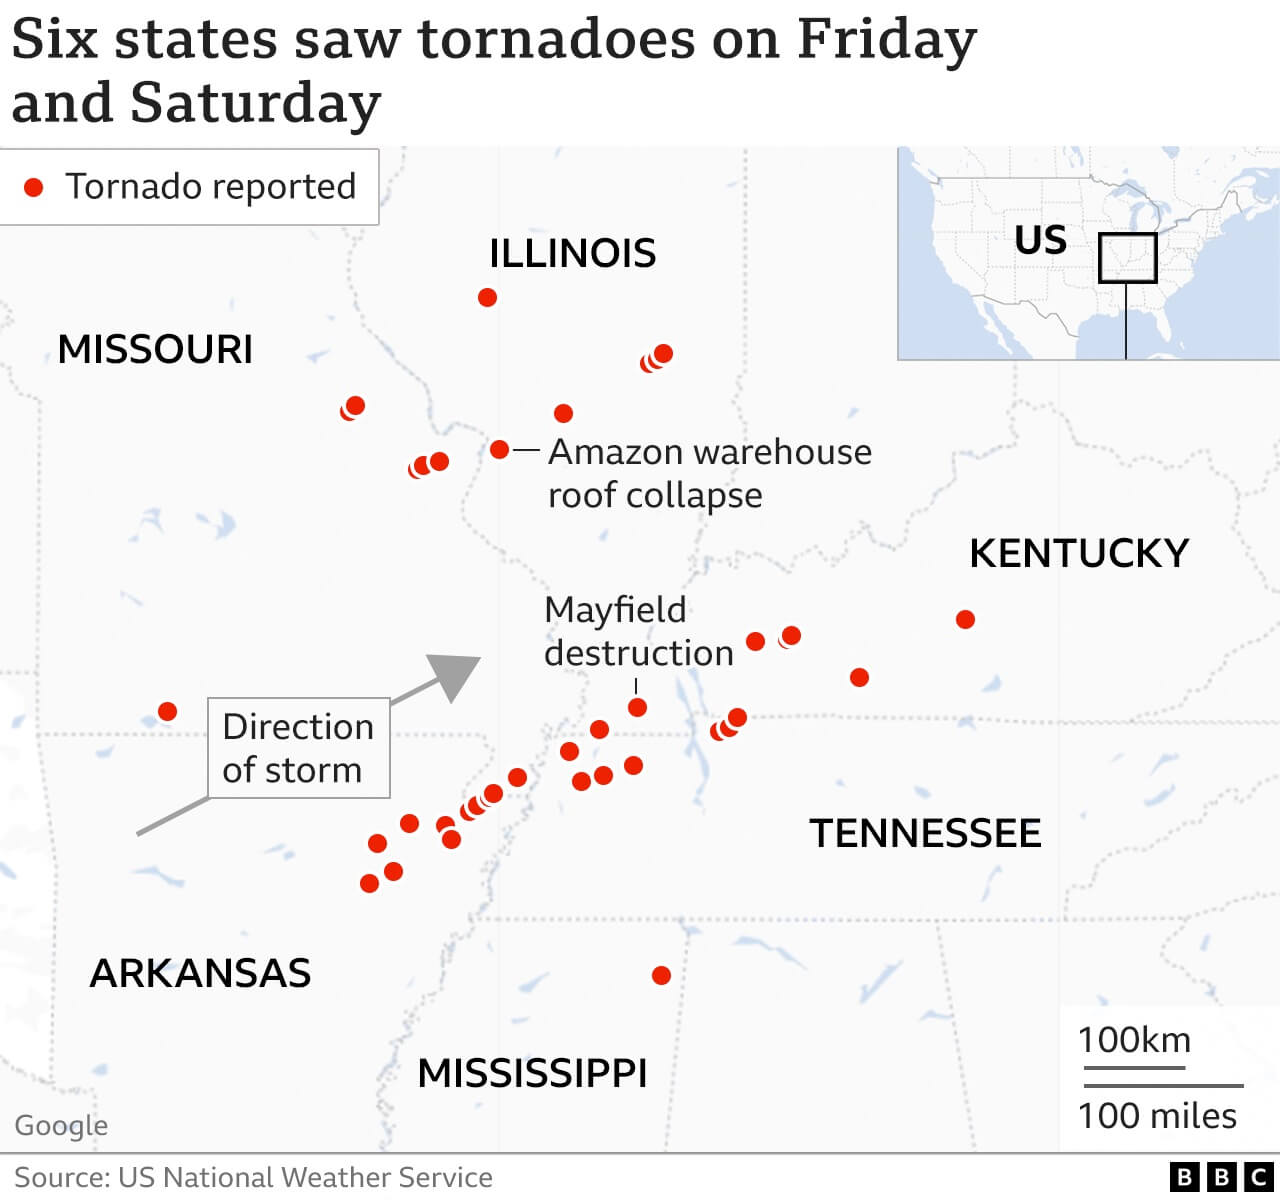 tornado danger image one <p>На прошлой неделе, 11 декабря, в США произошло одно из самых сильных торнадо в истории. Речь идет не об одном урагане, а сразу о нескольких - метеорологи считают, что их было более тридцати. Сильнее всего пострадал американский штат Кентукки, но стихийное бедствие затронуло штаты Миссури, Арканзас, Иллинойс и Теннесси. В результате смерча были уничтожены многие здания, от них практически ничего не осталось. Погибшими считаются сотни человек и еще столько же пропали без вести - точных данных до сих пор нет, но сообщалось, что в Кентукки погибло 74 человека в возрасте от 2 месяцев до 98 лет. К большому сожалению, природа не перестает нас удивлять своими жестокими сюрпризами. Предлагаю разобраться, из-за чего возникают торнадо и какой ущерб был нанесен США.